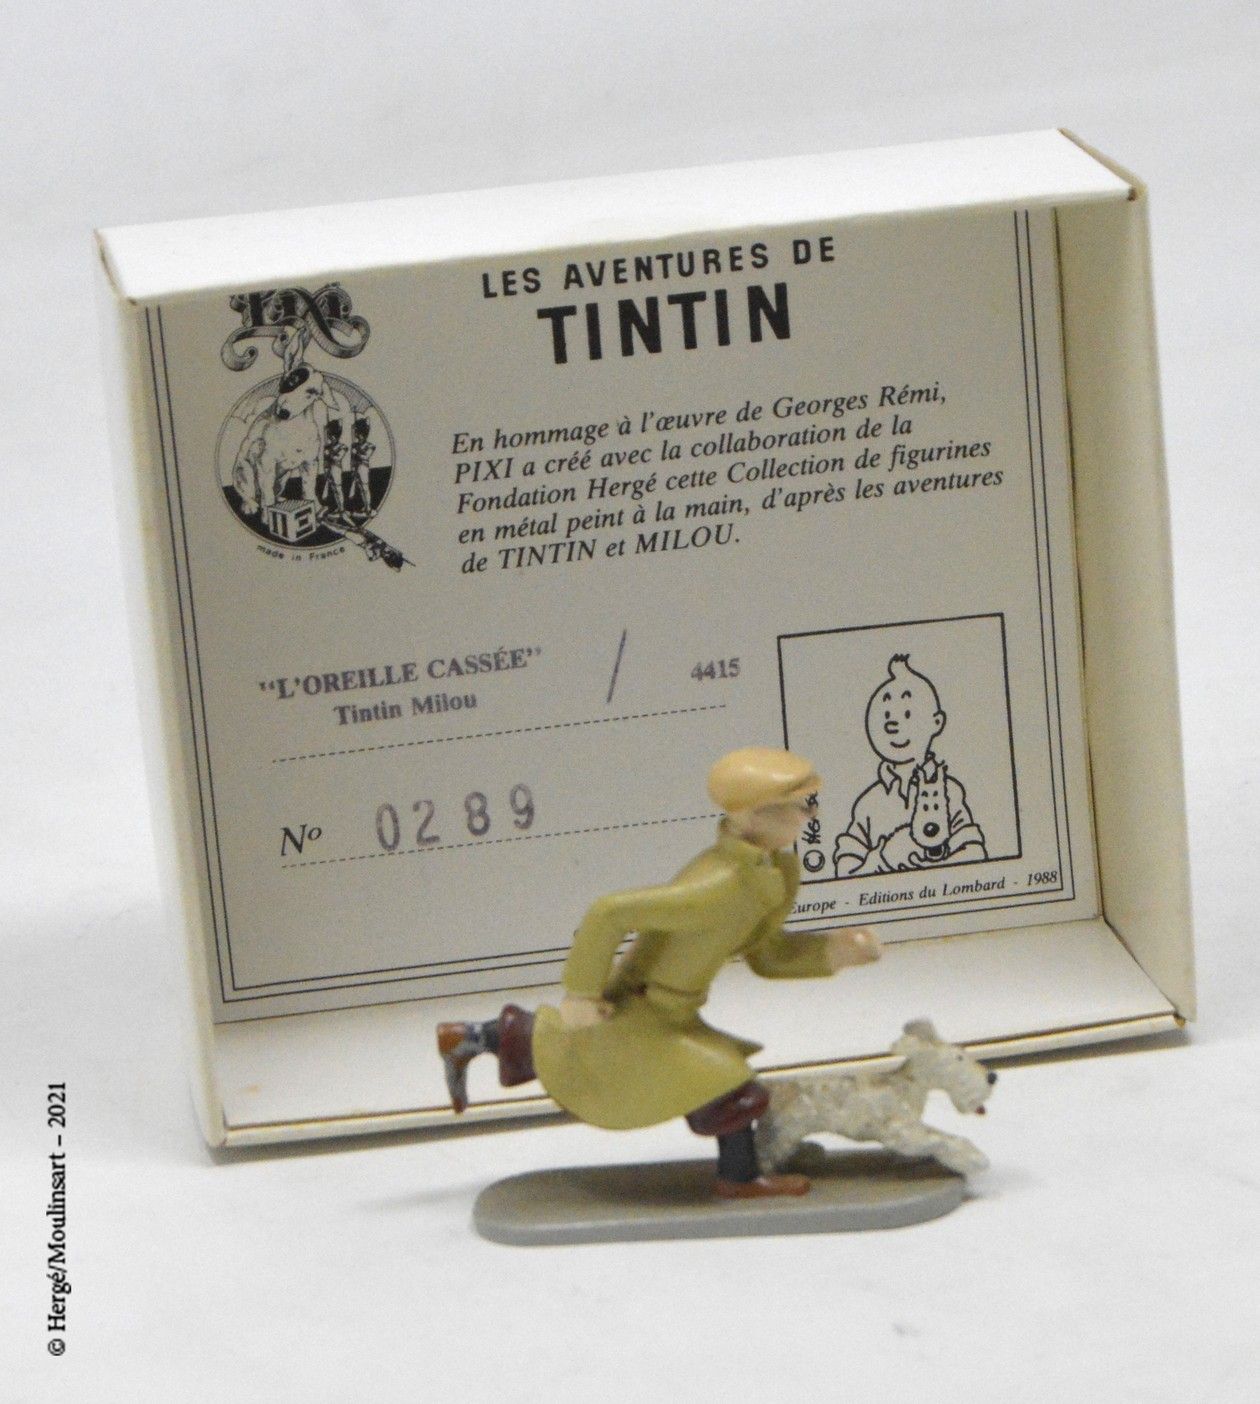 L'oreille cassée 赫格/皮克斯（HERGÉ/PIXI

Hergé :丁丁系列第2号

残缺的耳朵：丁丁在奔跑（1991）。

参考资料：452&hellip;